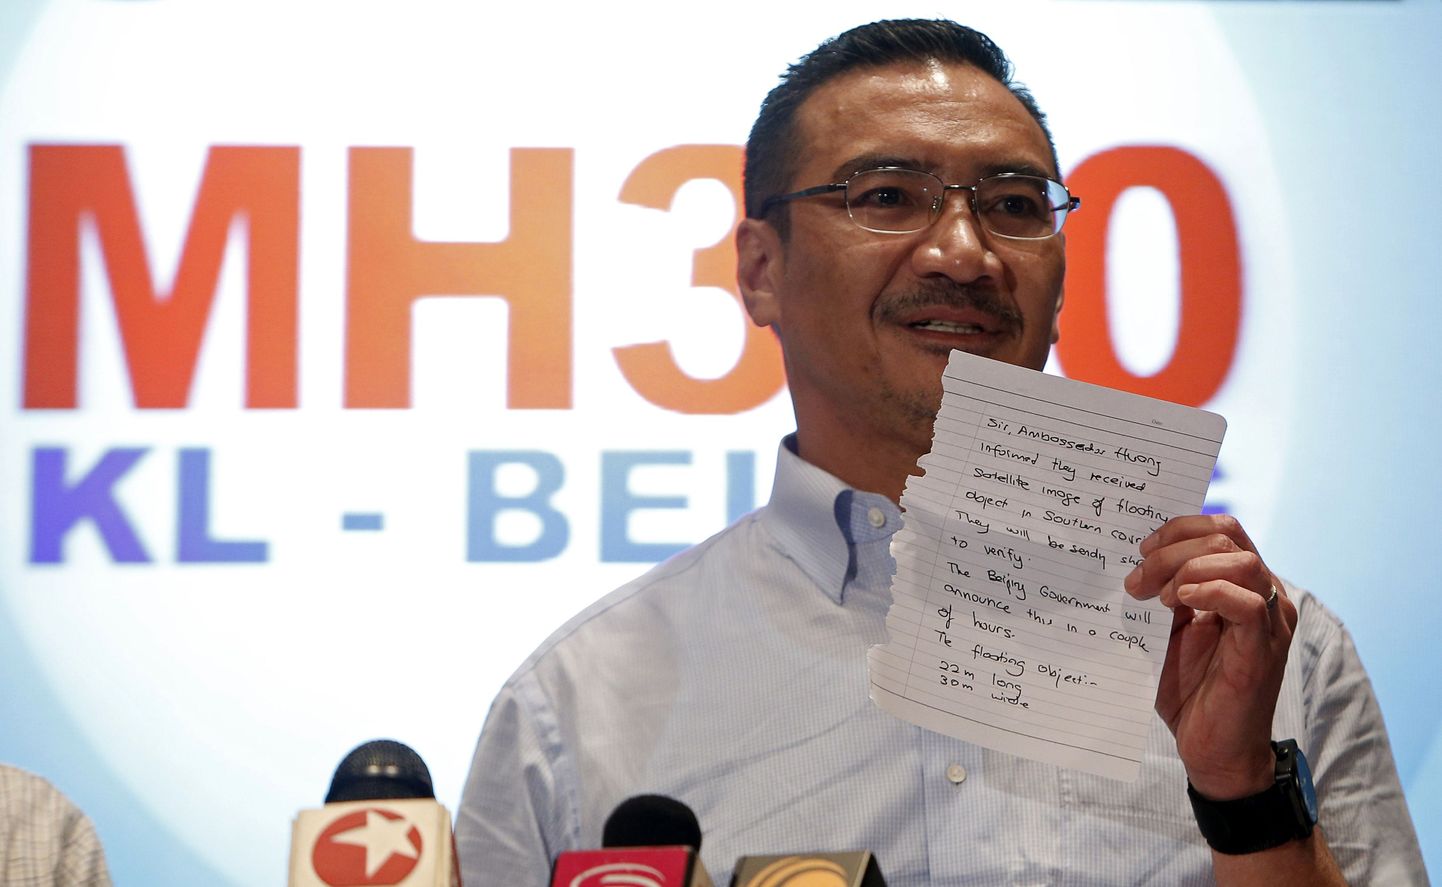 Malaisia transpordiminister Hishammuddin Hussein näitas täna värsket sõnumit Hiina satelliitpiltidelt leitud objektide kohta.